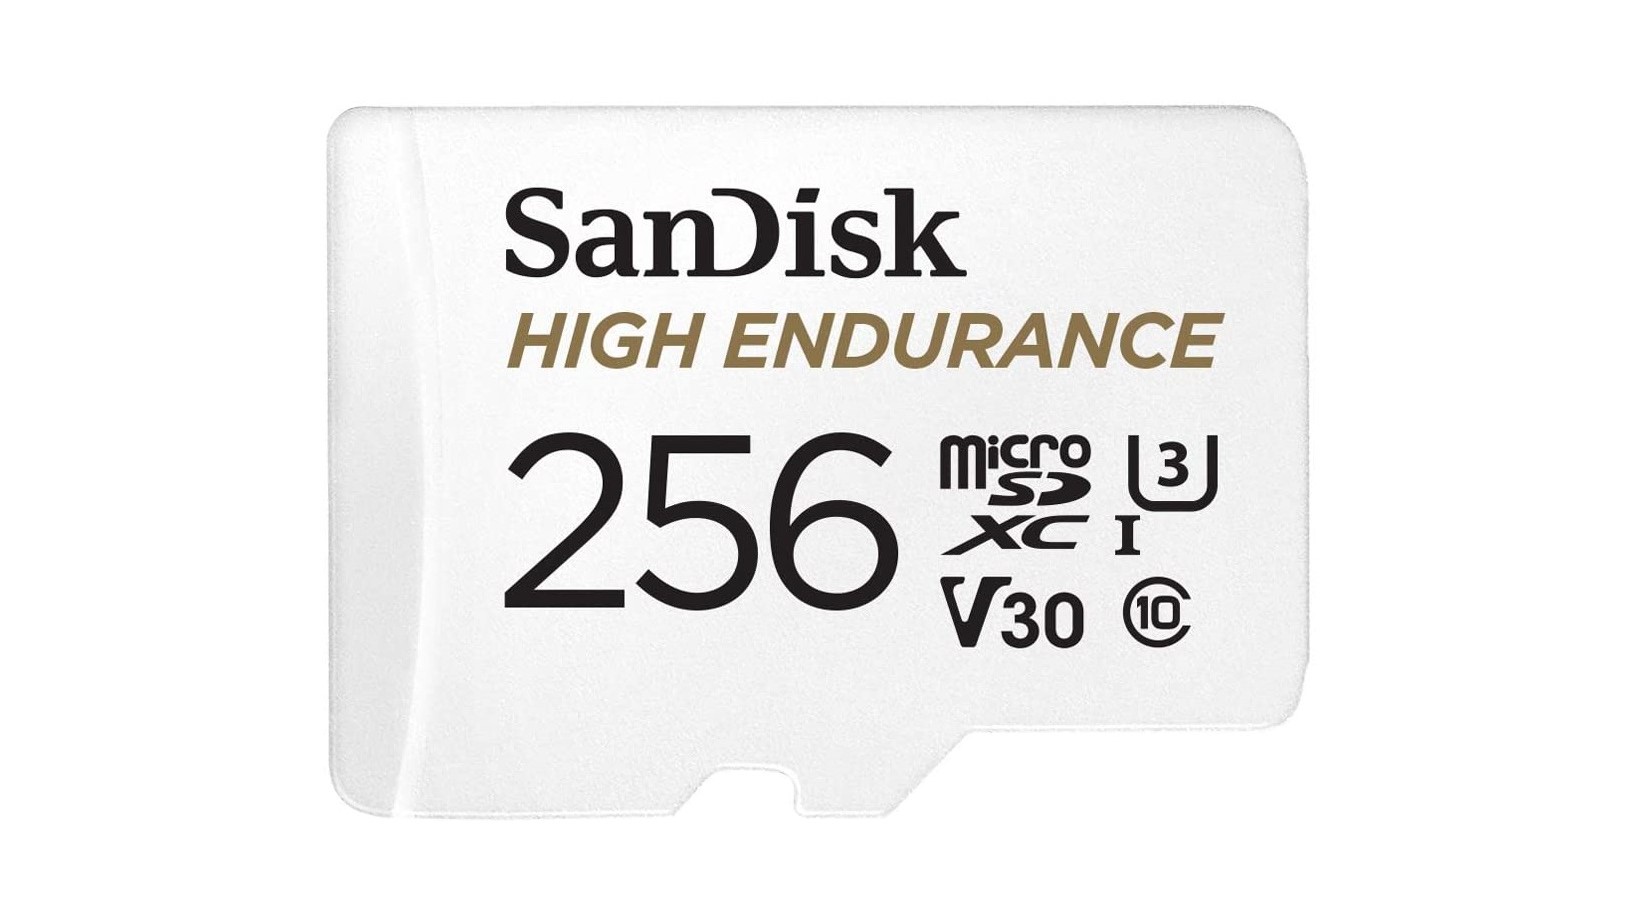 Sandisk高耐力microSD卡